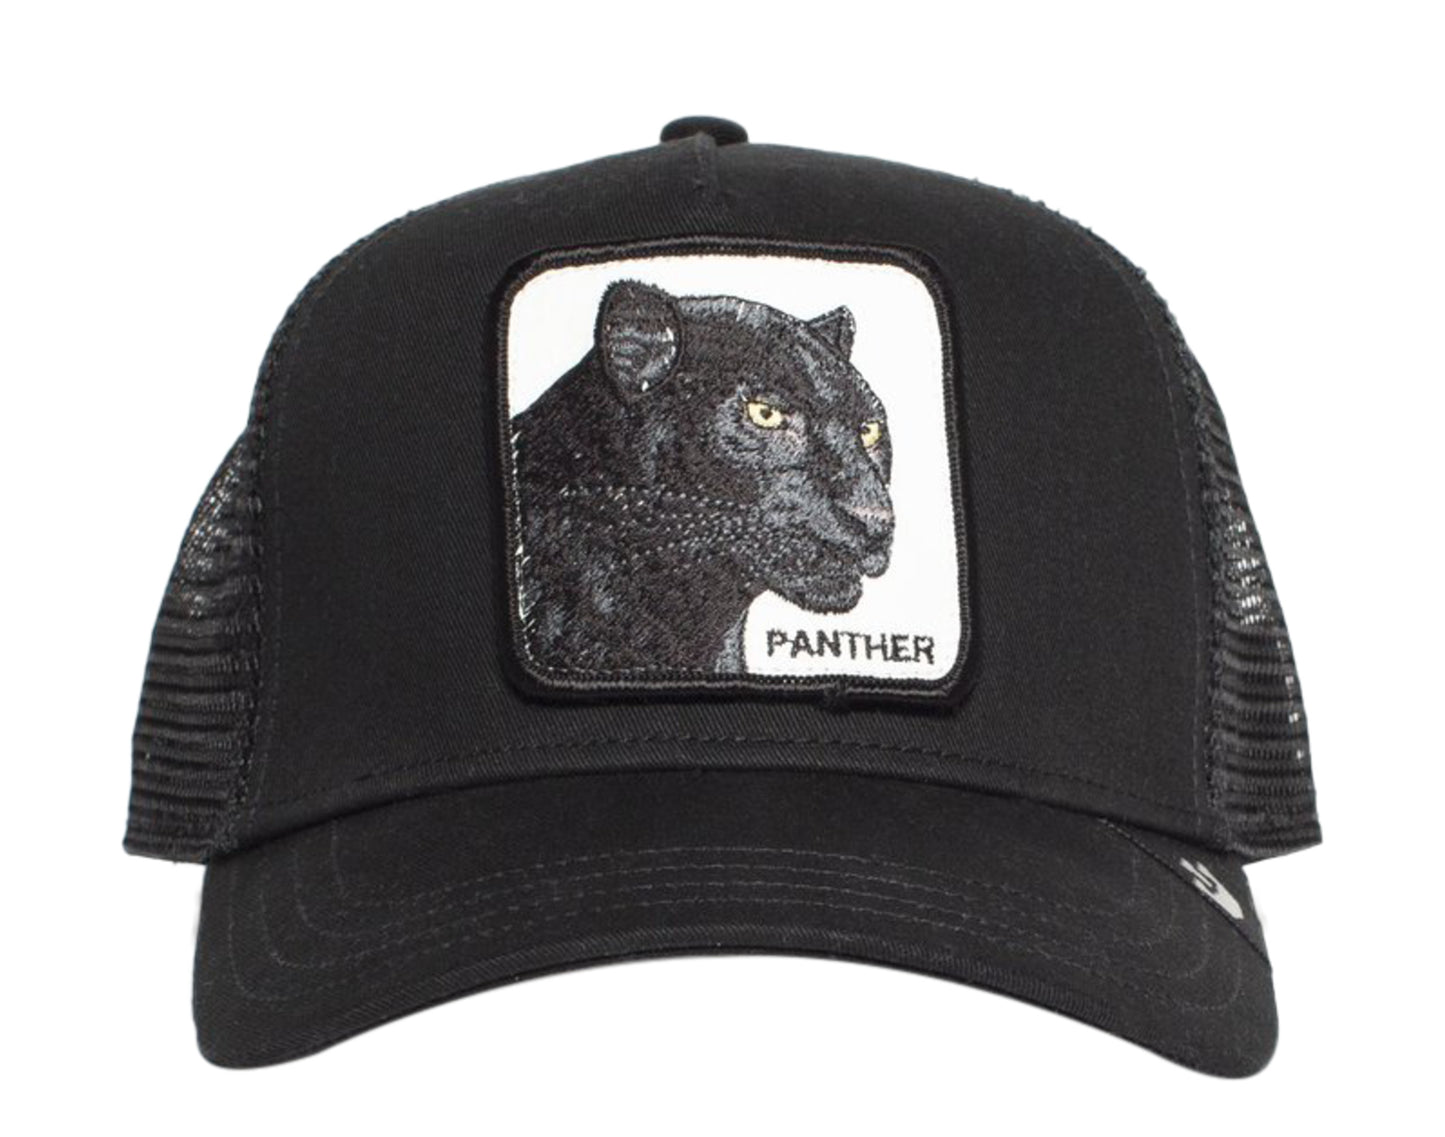 Goorin Bros Black Panther Trucker Hat